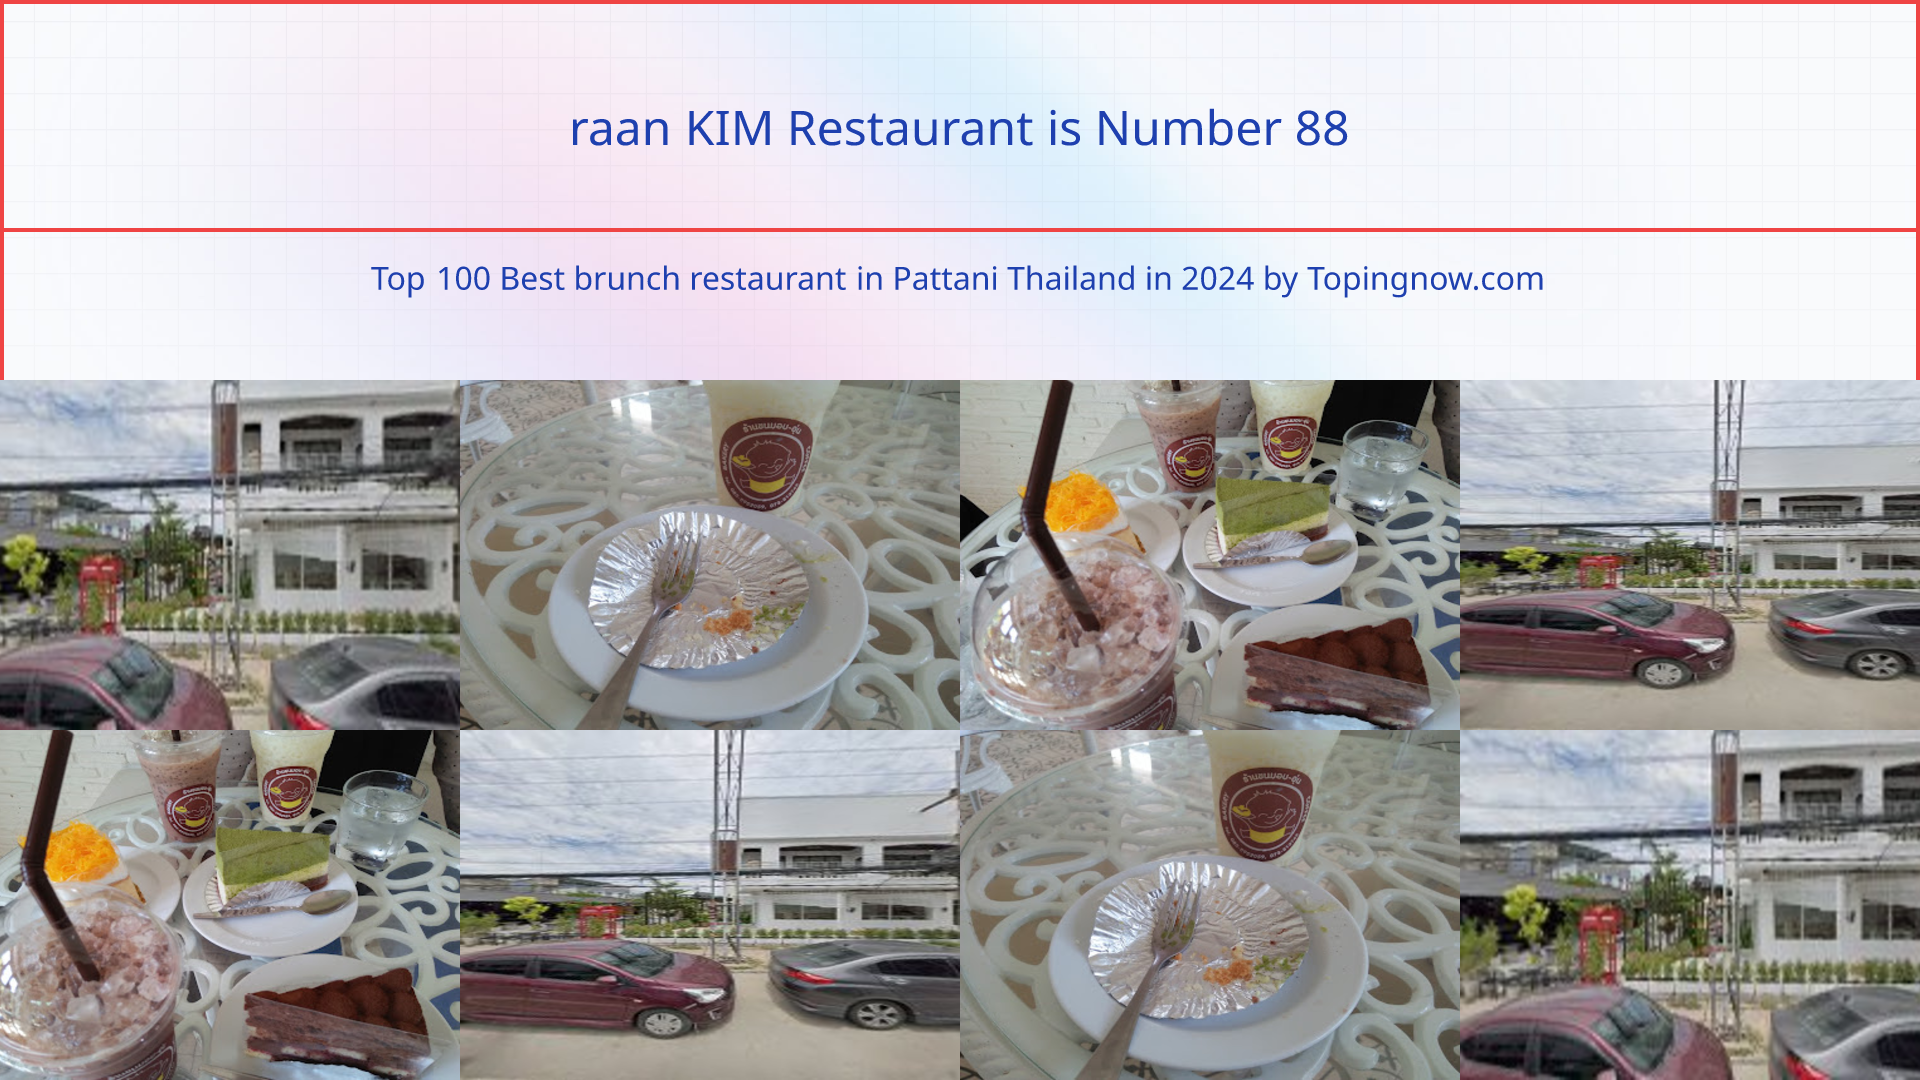 raan KIM Restaurant: Top 100 Best brunch restaurant in Pattani Thailand in 2024